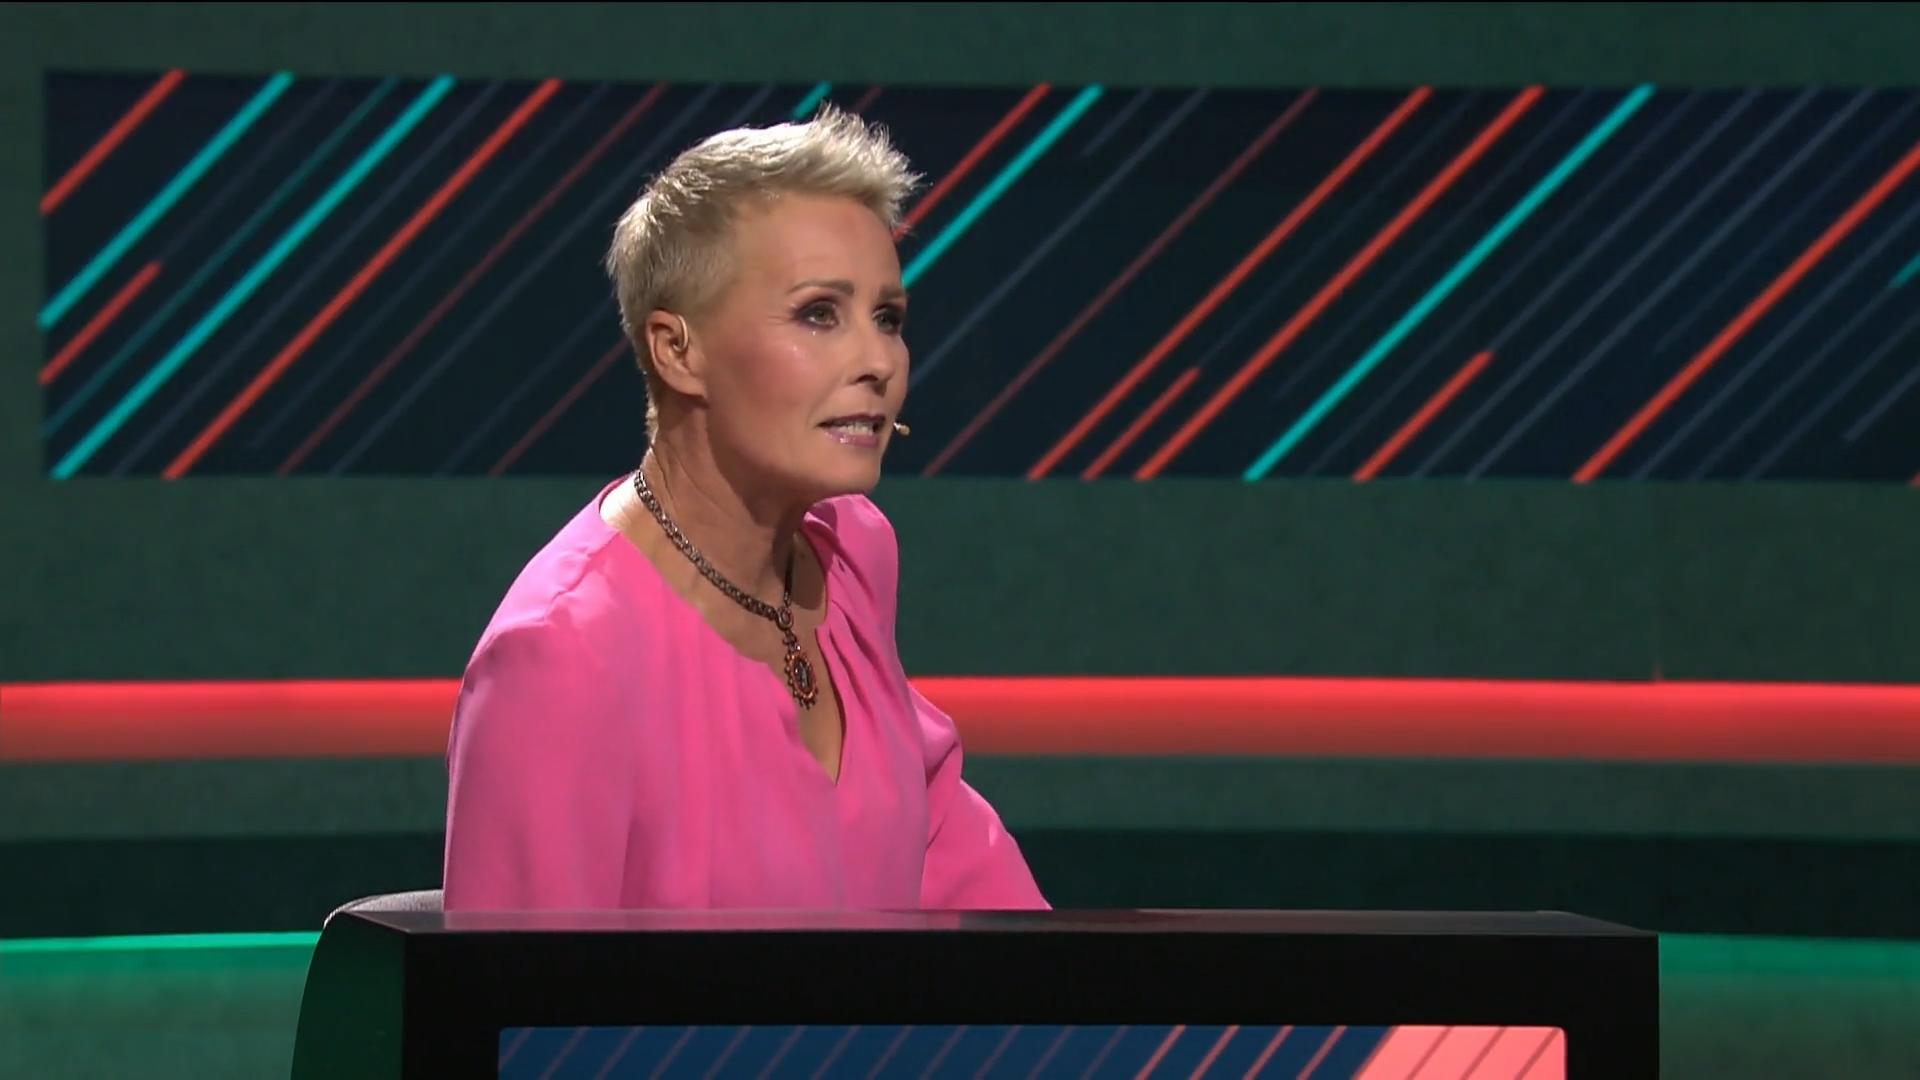 Sonja Zietlow verrät ihr besonderes Talent In neuer RTL-Show "Ich setz auf dich"